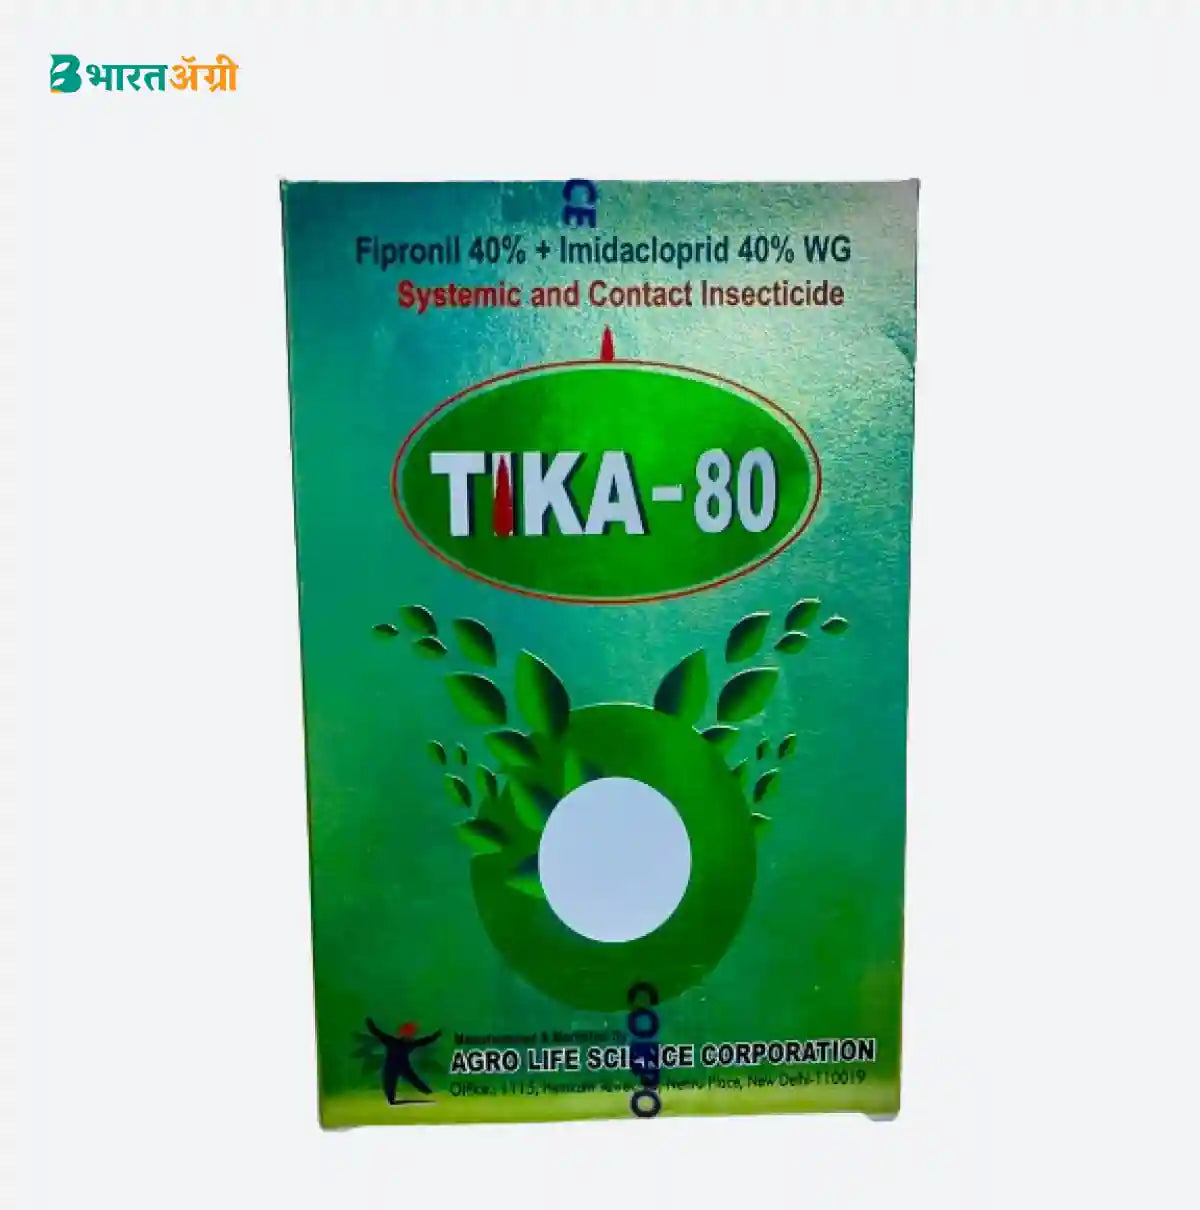 Agro Life Science Tika-80 Insecticide | BharatAgri Krushidukan